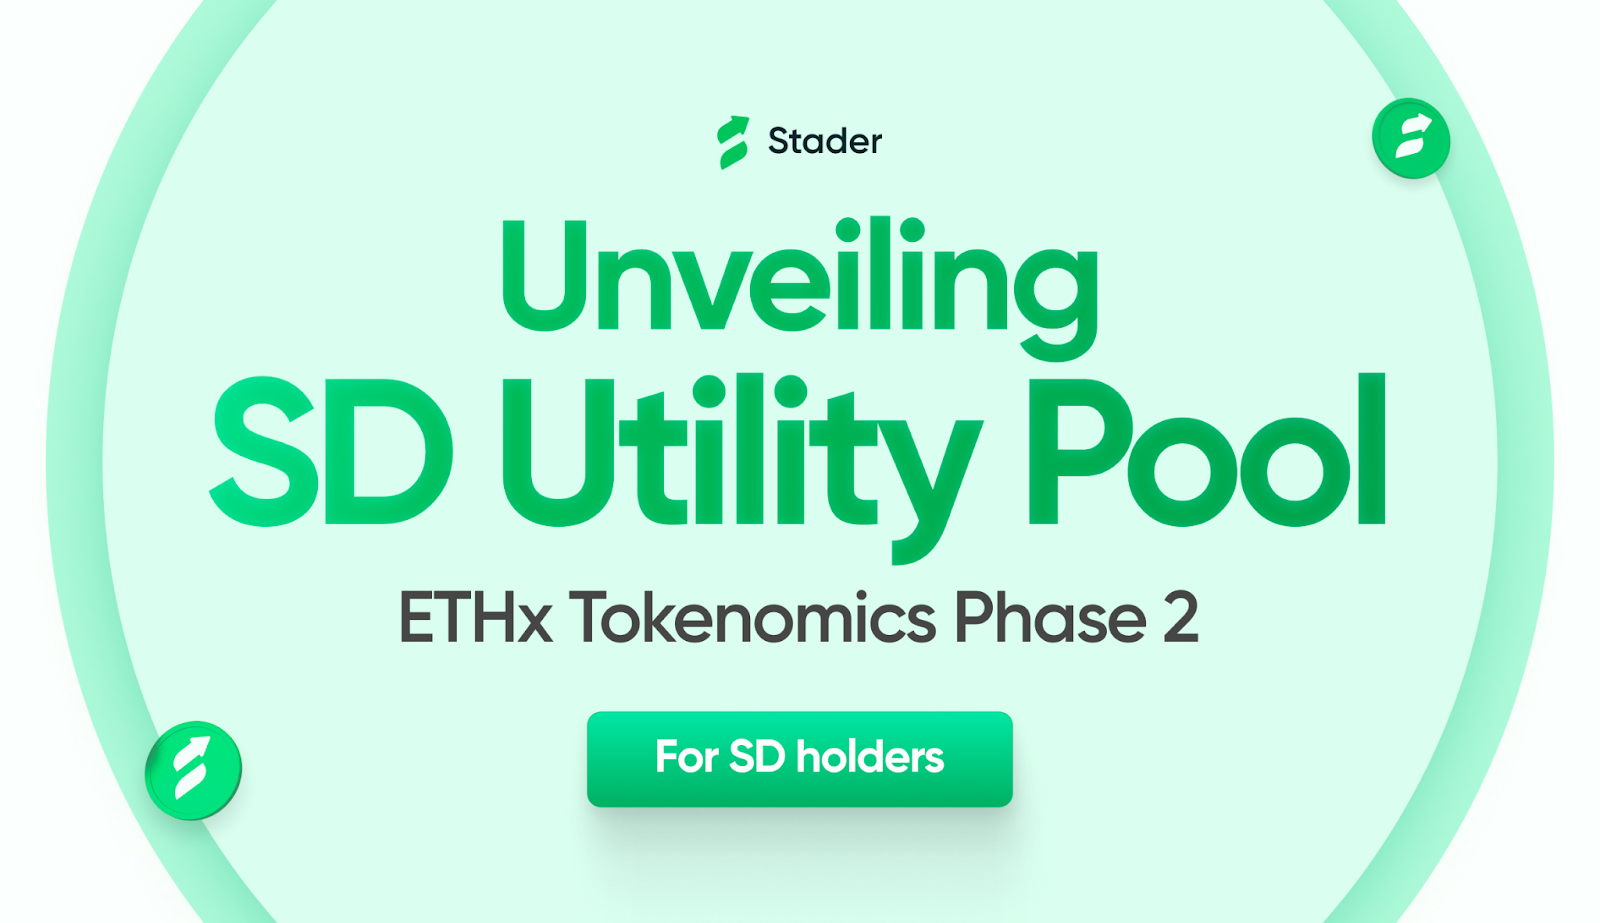 Unlocking higher utility for Stader's governance token | For SD holders